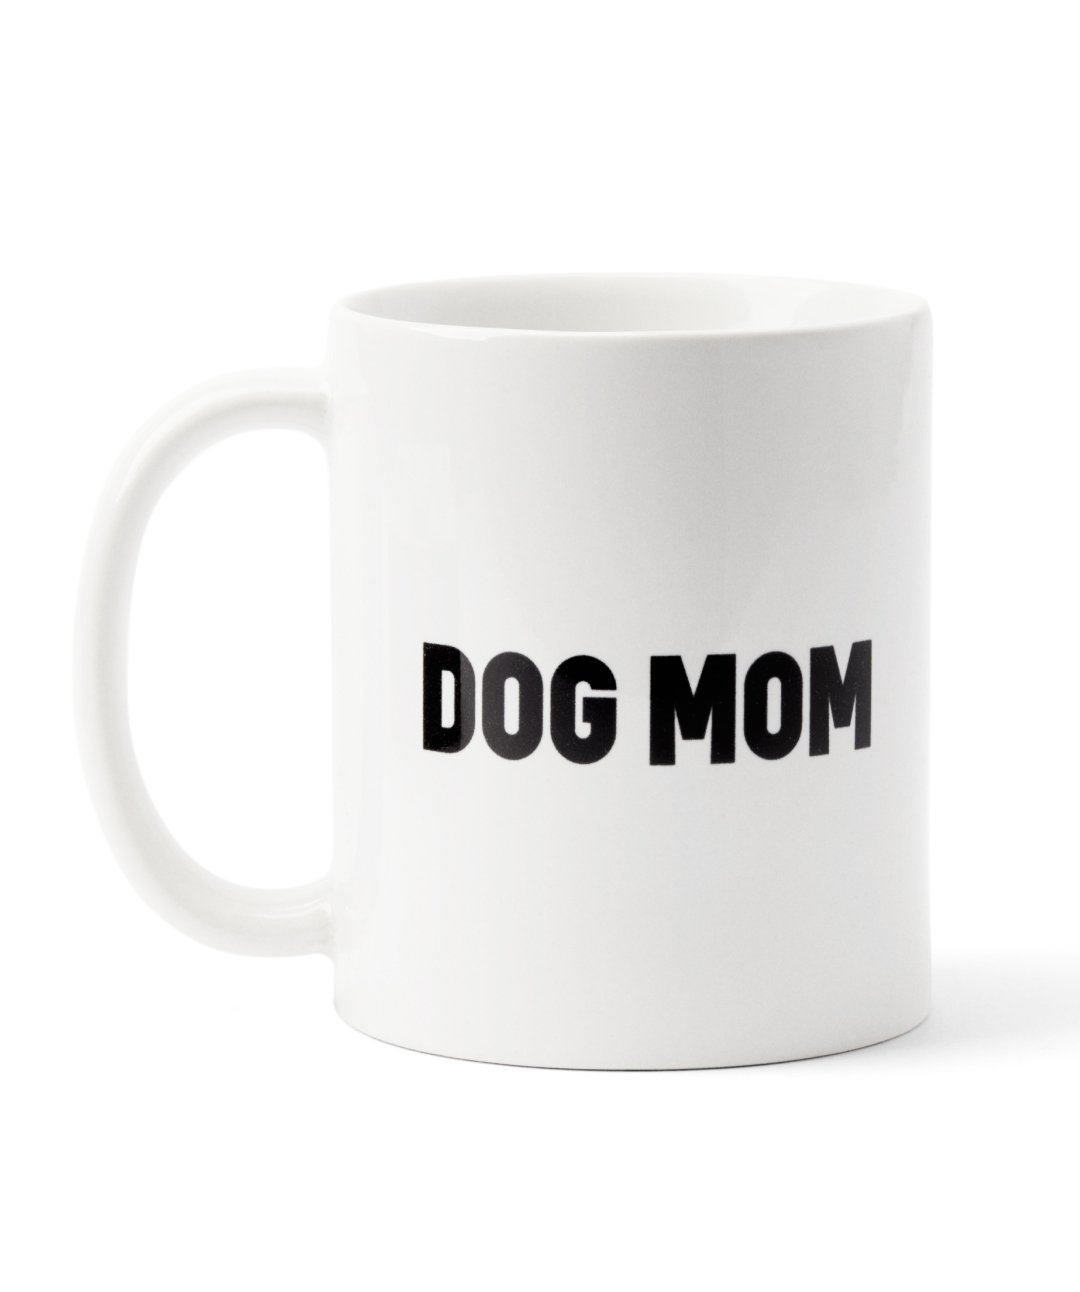 https://store.rover.com/cdn/shop/products/dog-mom-dog-dad-mug-set-mug-rover-store-932167_1400x.jpg?v=1631731974